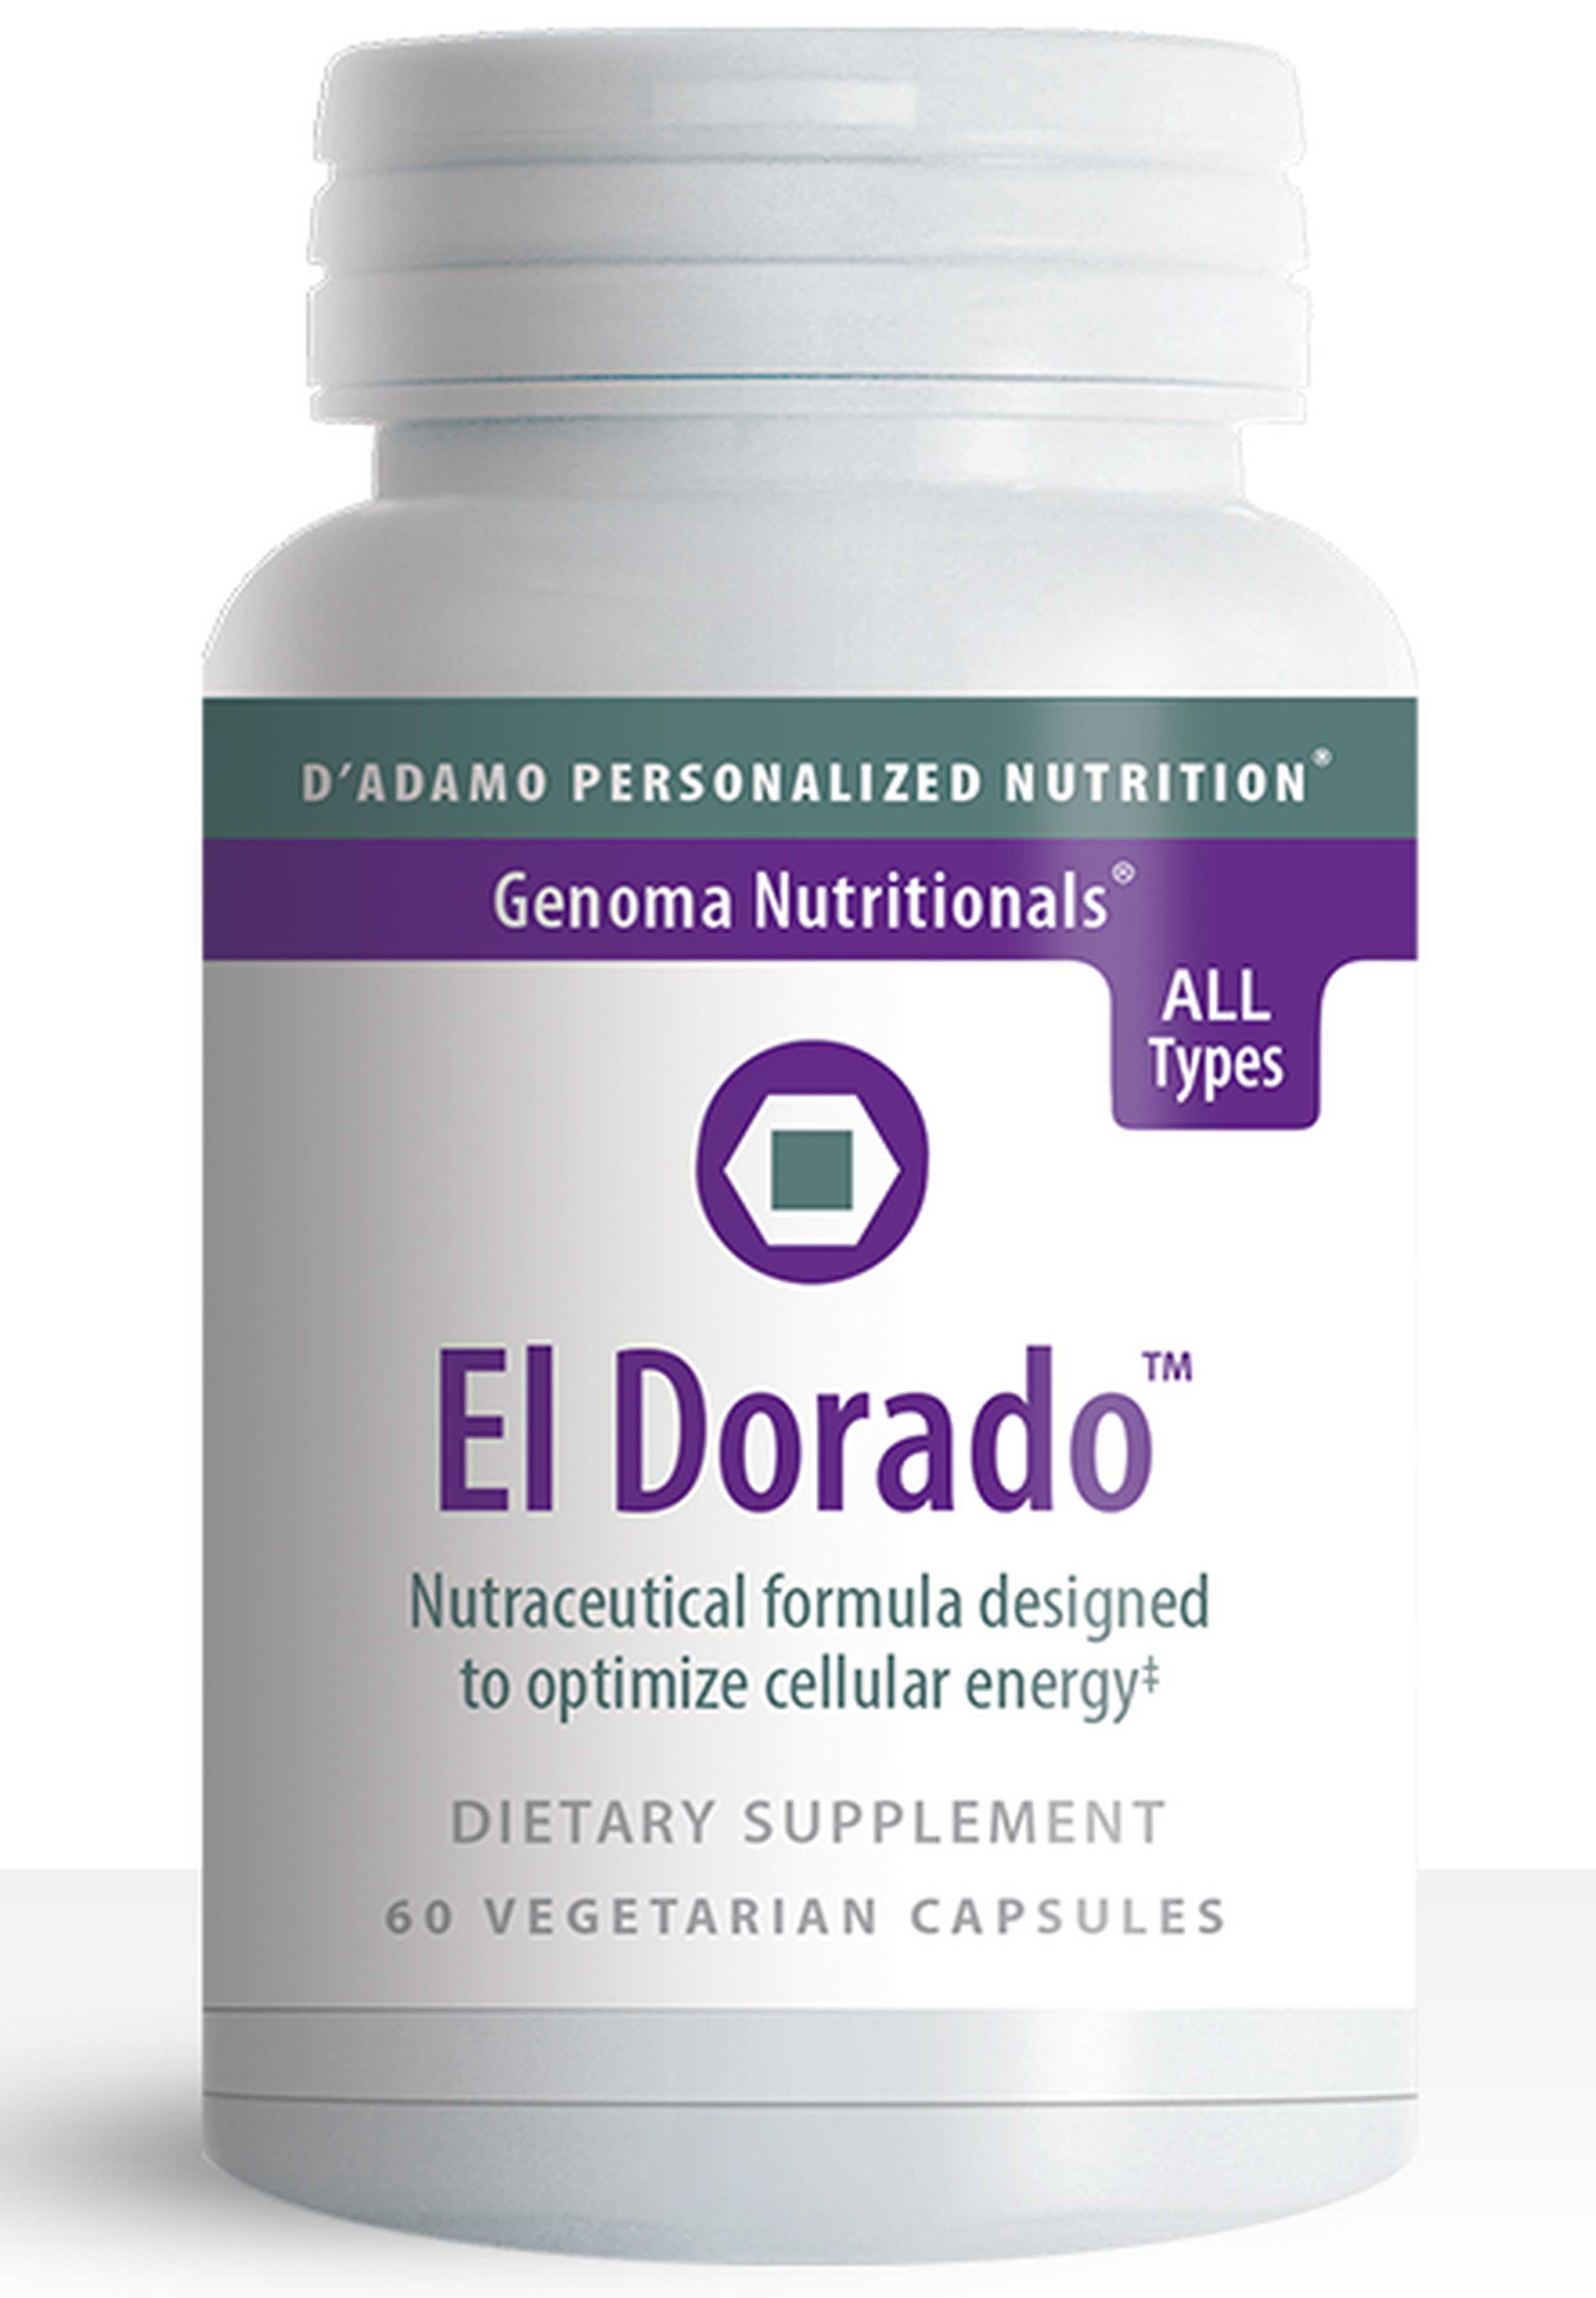 D'Adamo Personalized Nutrition El Dorado